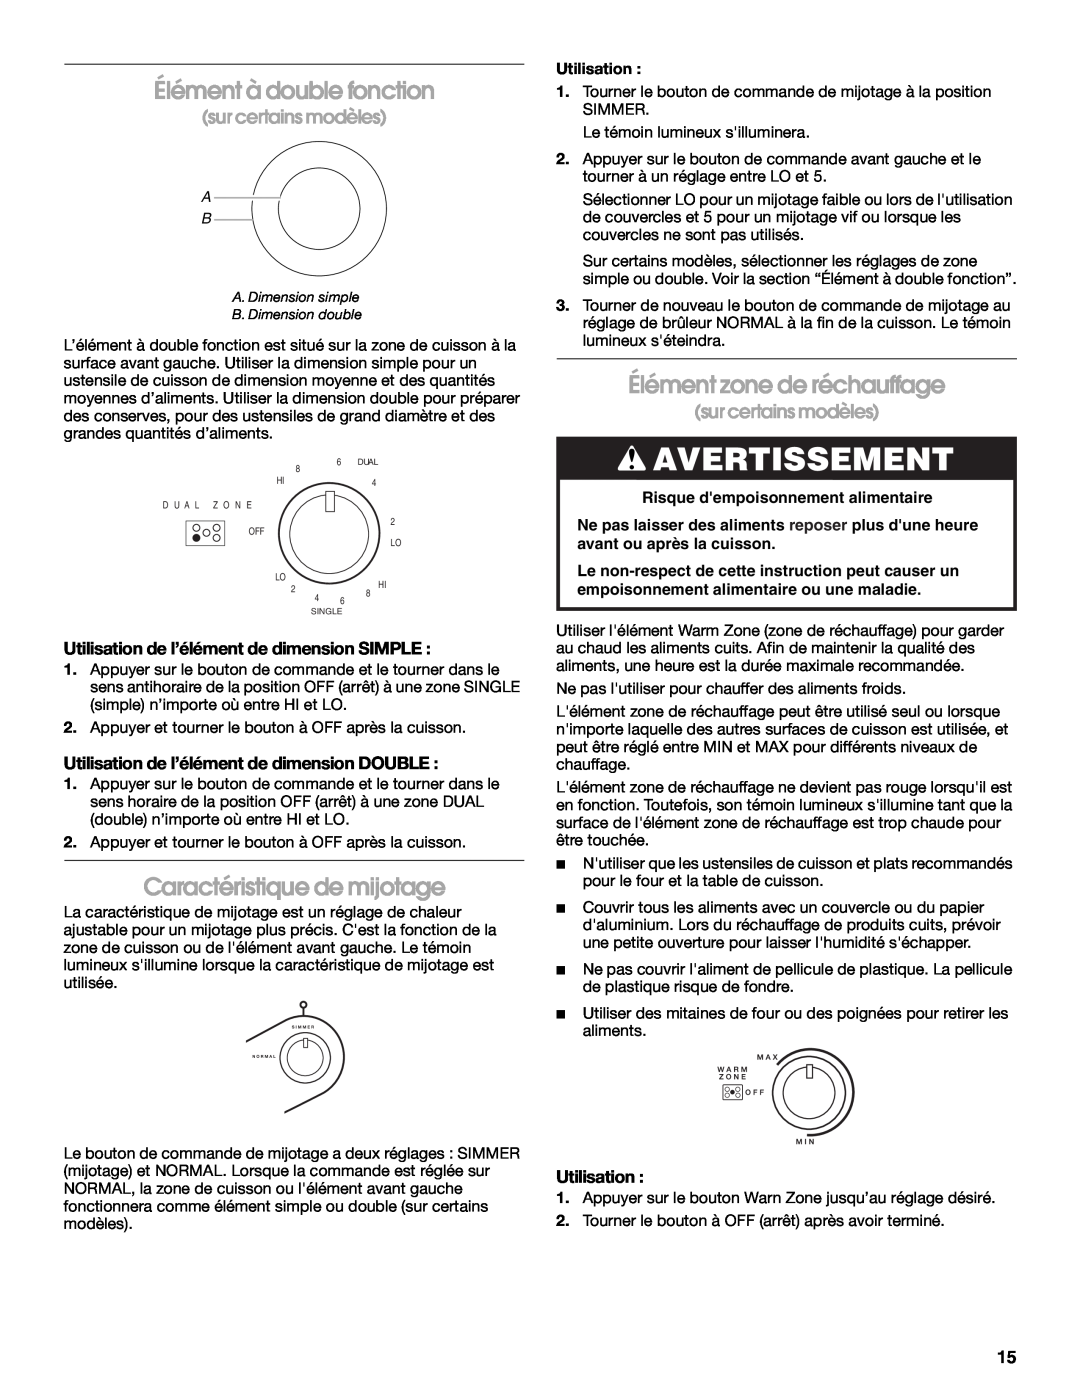 Whirlpool 8286619 manual Élément à double fonction, Élément zone de réchauffage, Caractéristique de mijotage, Avertissement 